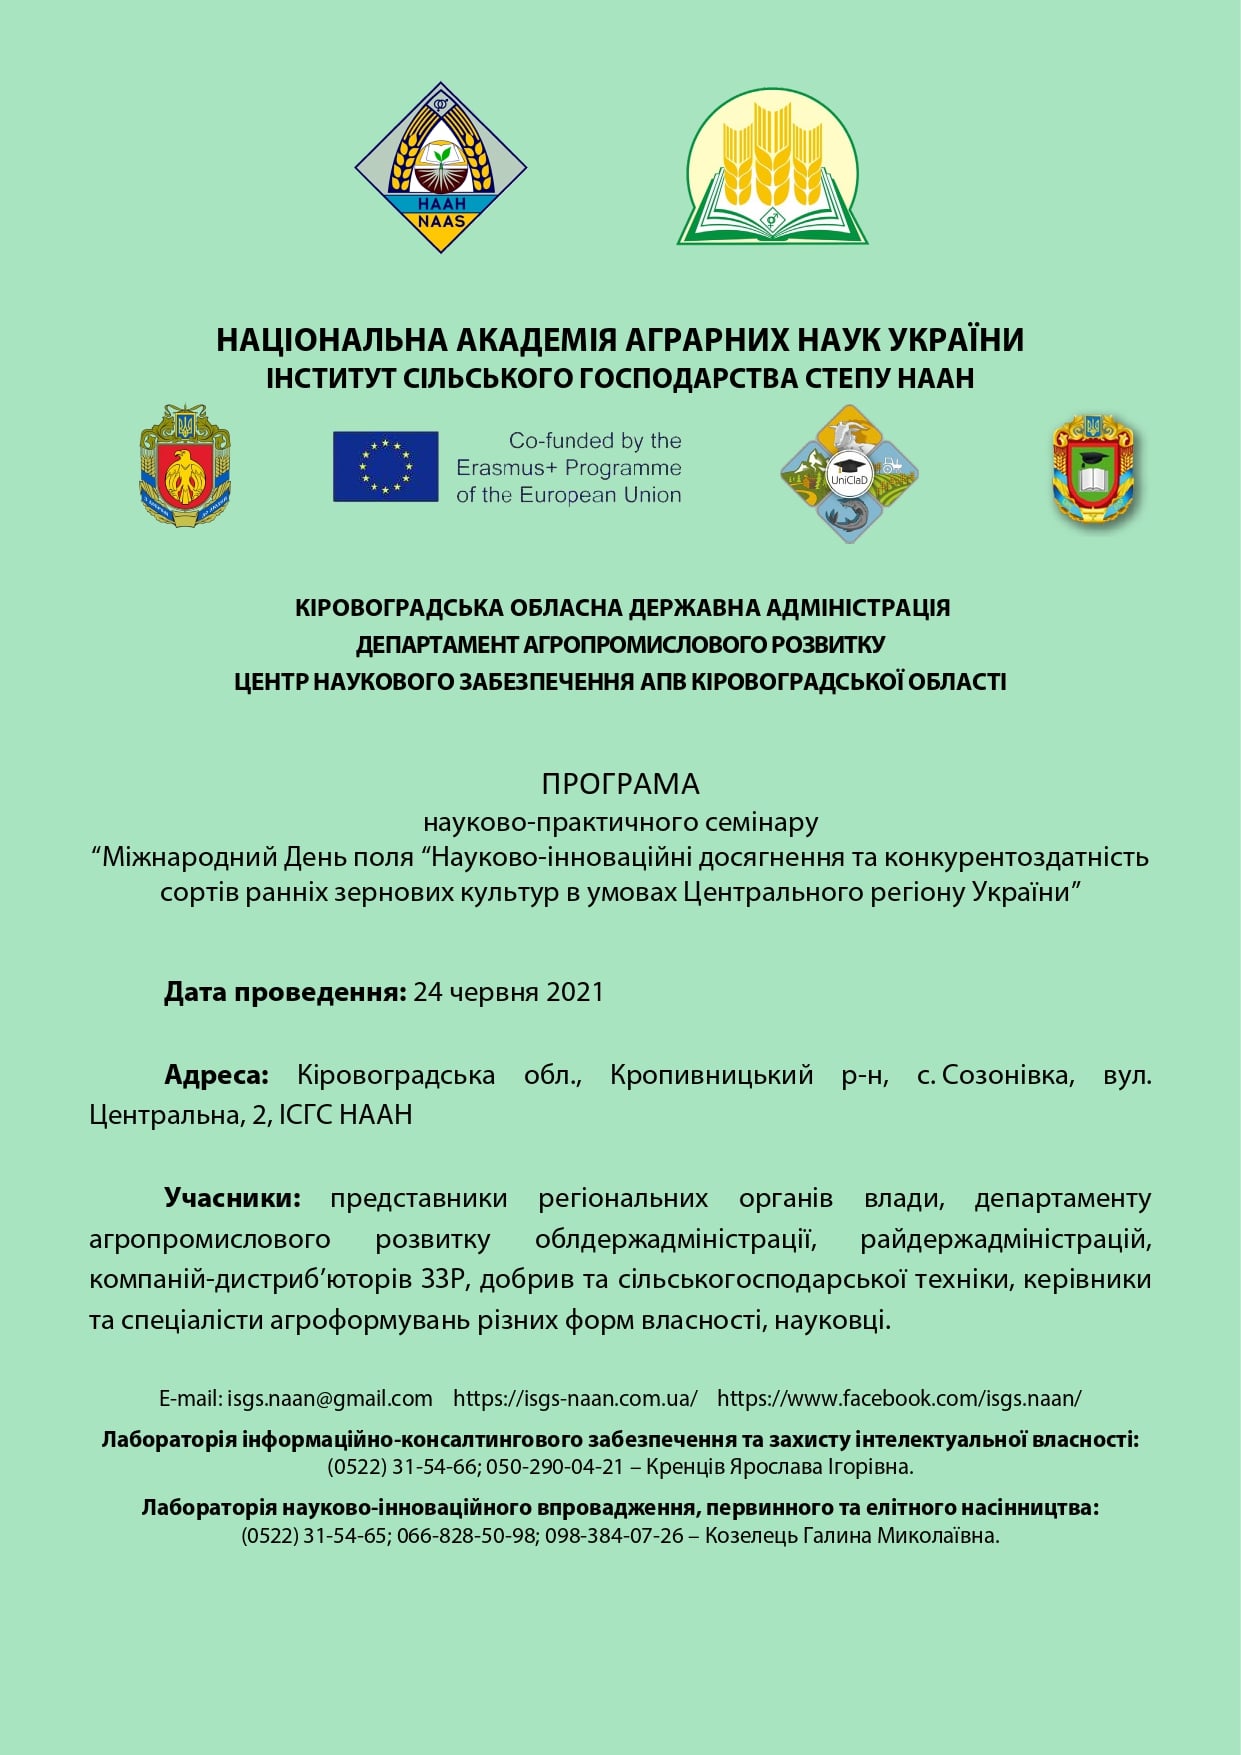 Завтра на Кіровоградщині відбудеться міжнародний День поля